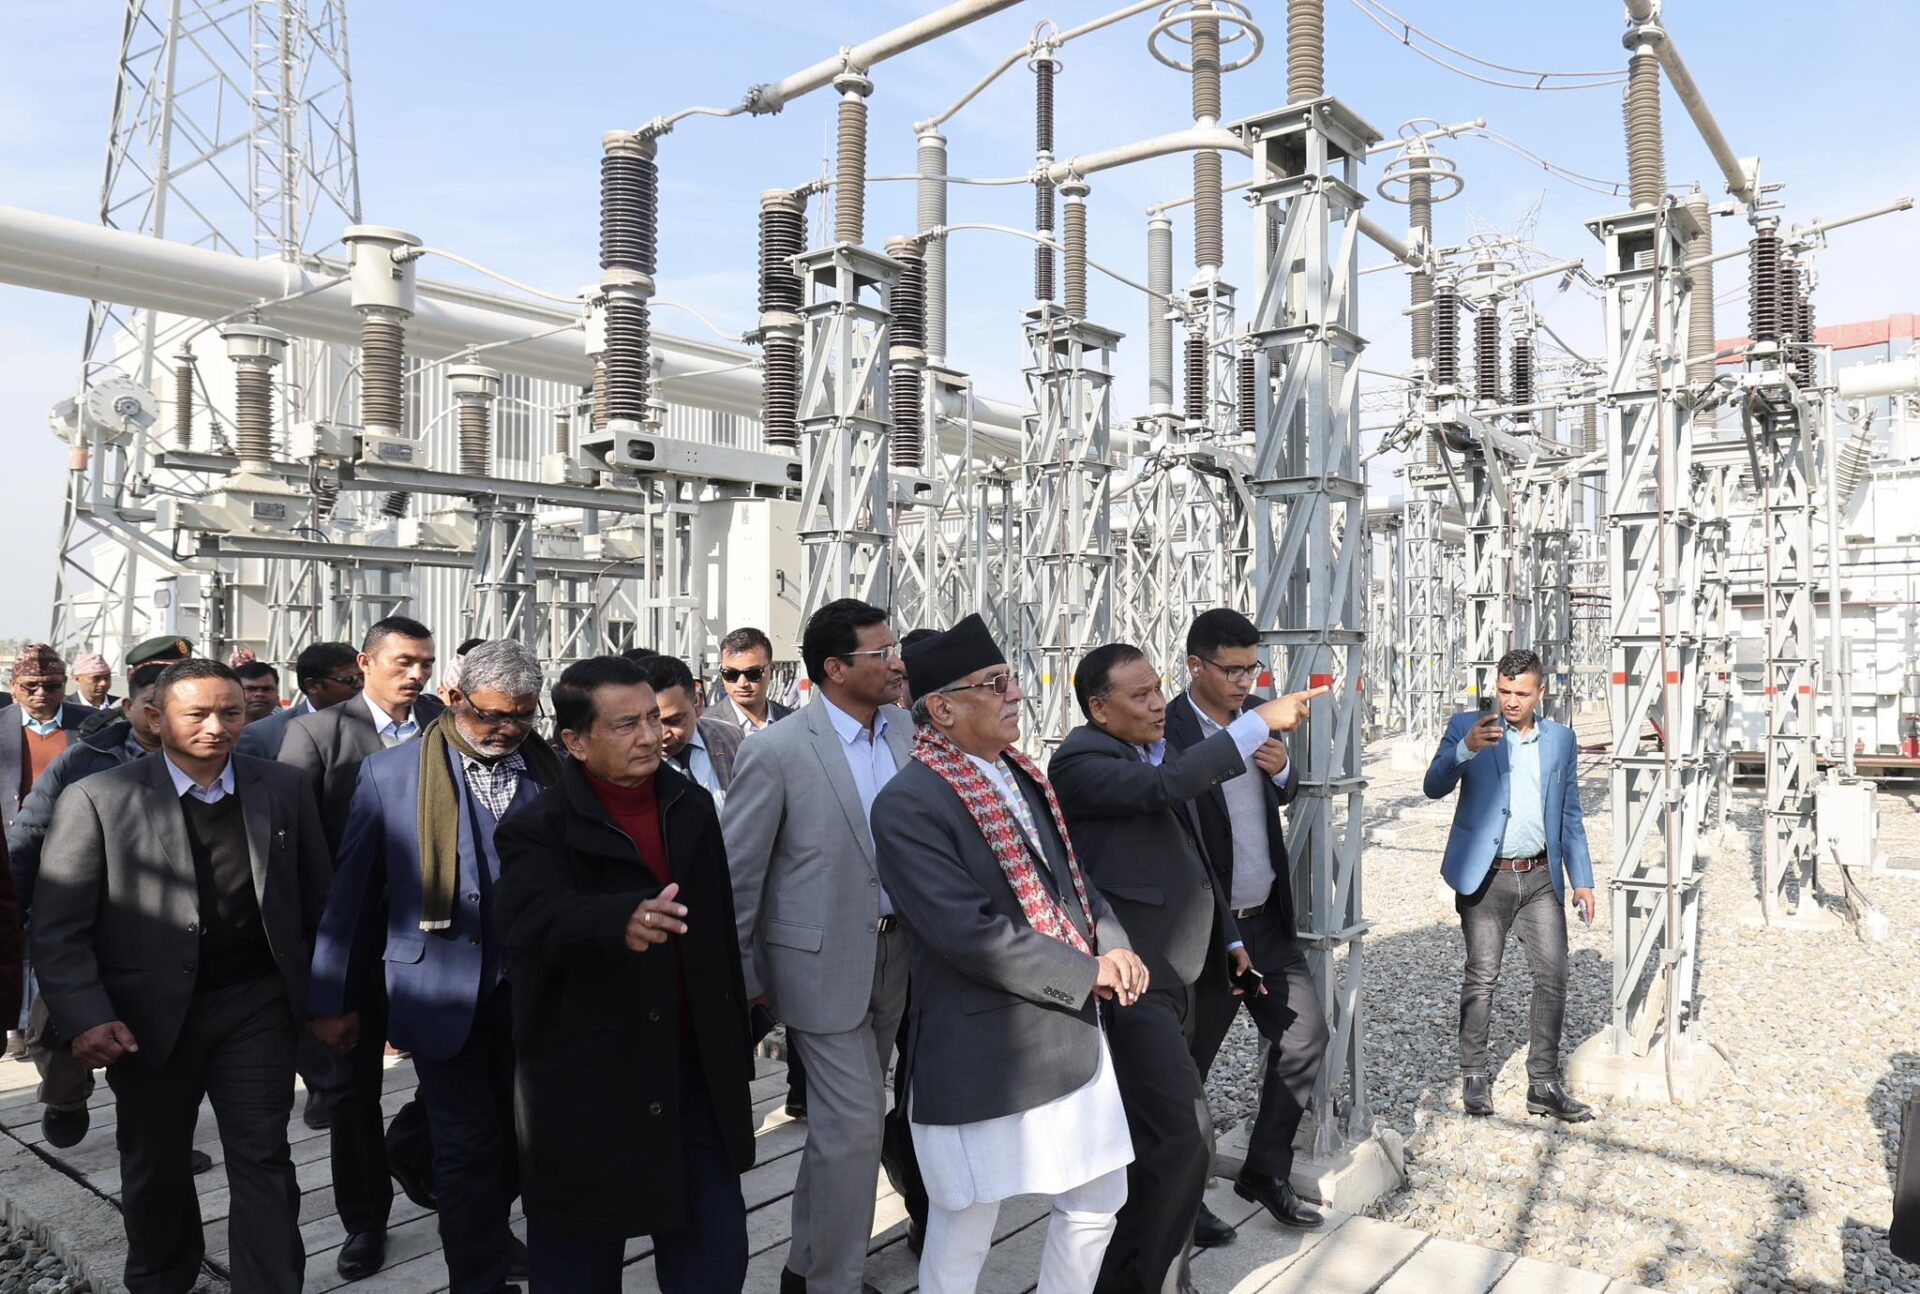 इनरुवा सव स्टेशनको उद्घाटन, भारत विद्युत पठाउने बाटो खुल्यो